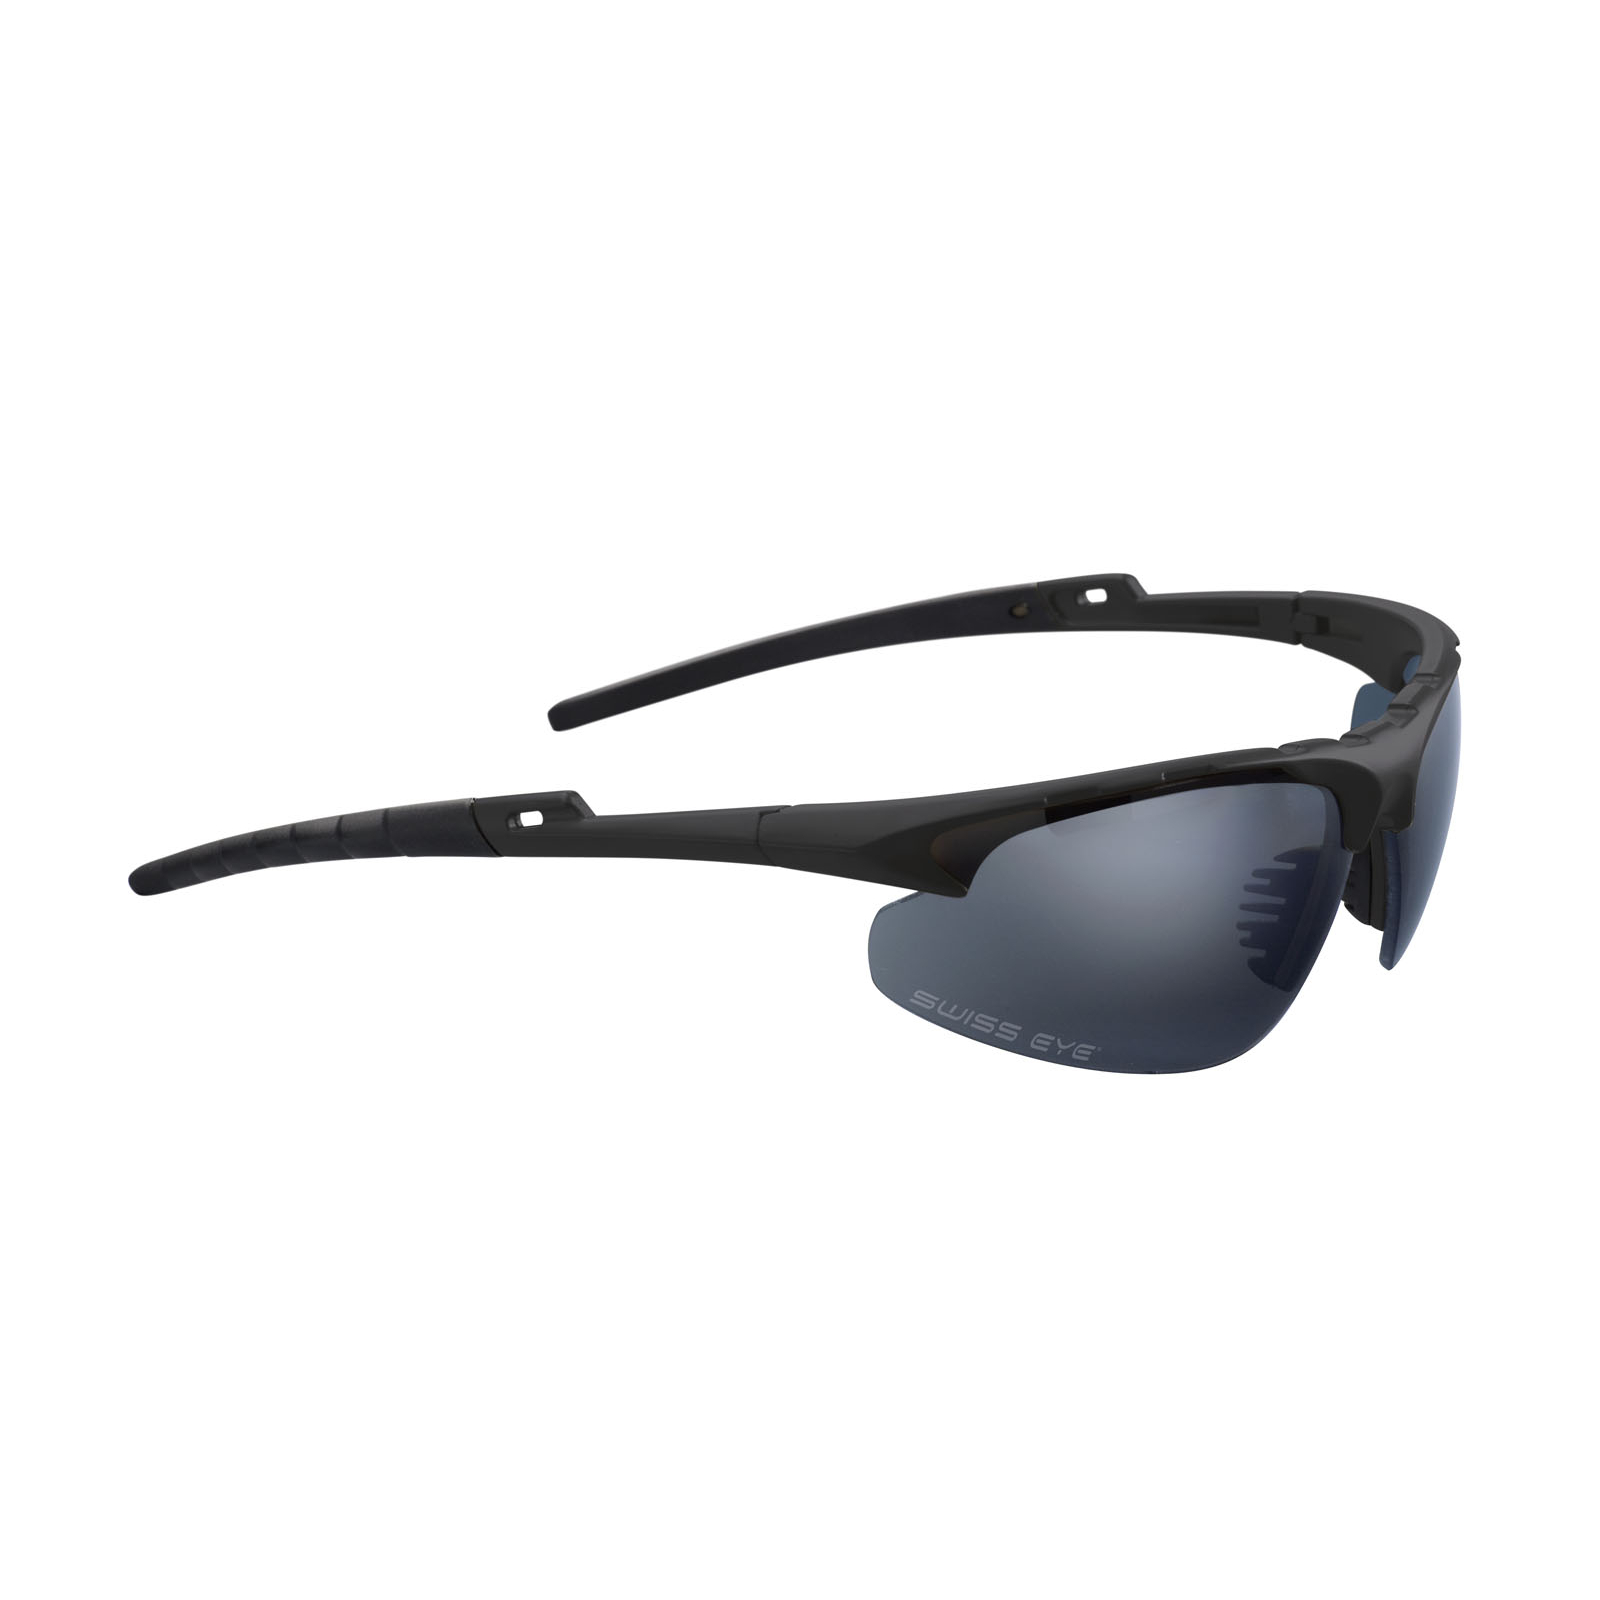 Тактические очки Swiss Eye Apache баллистические , 3 компл. сменных линз, футляр (40231)